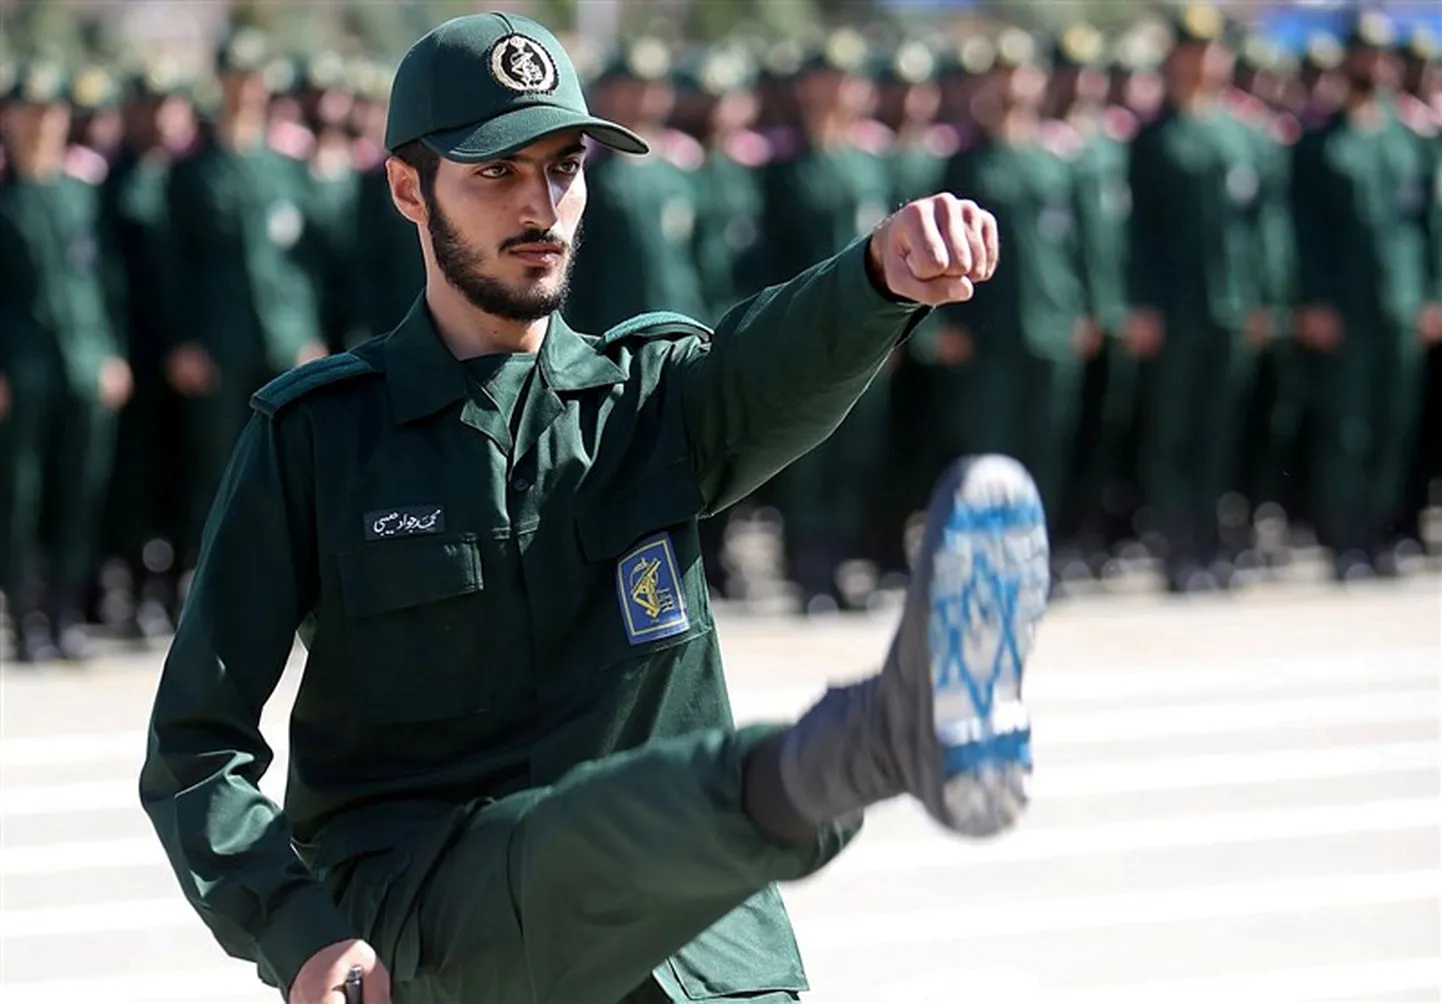 Iraani revolutsioonikaardi ohvitser.